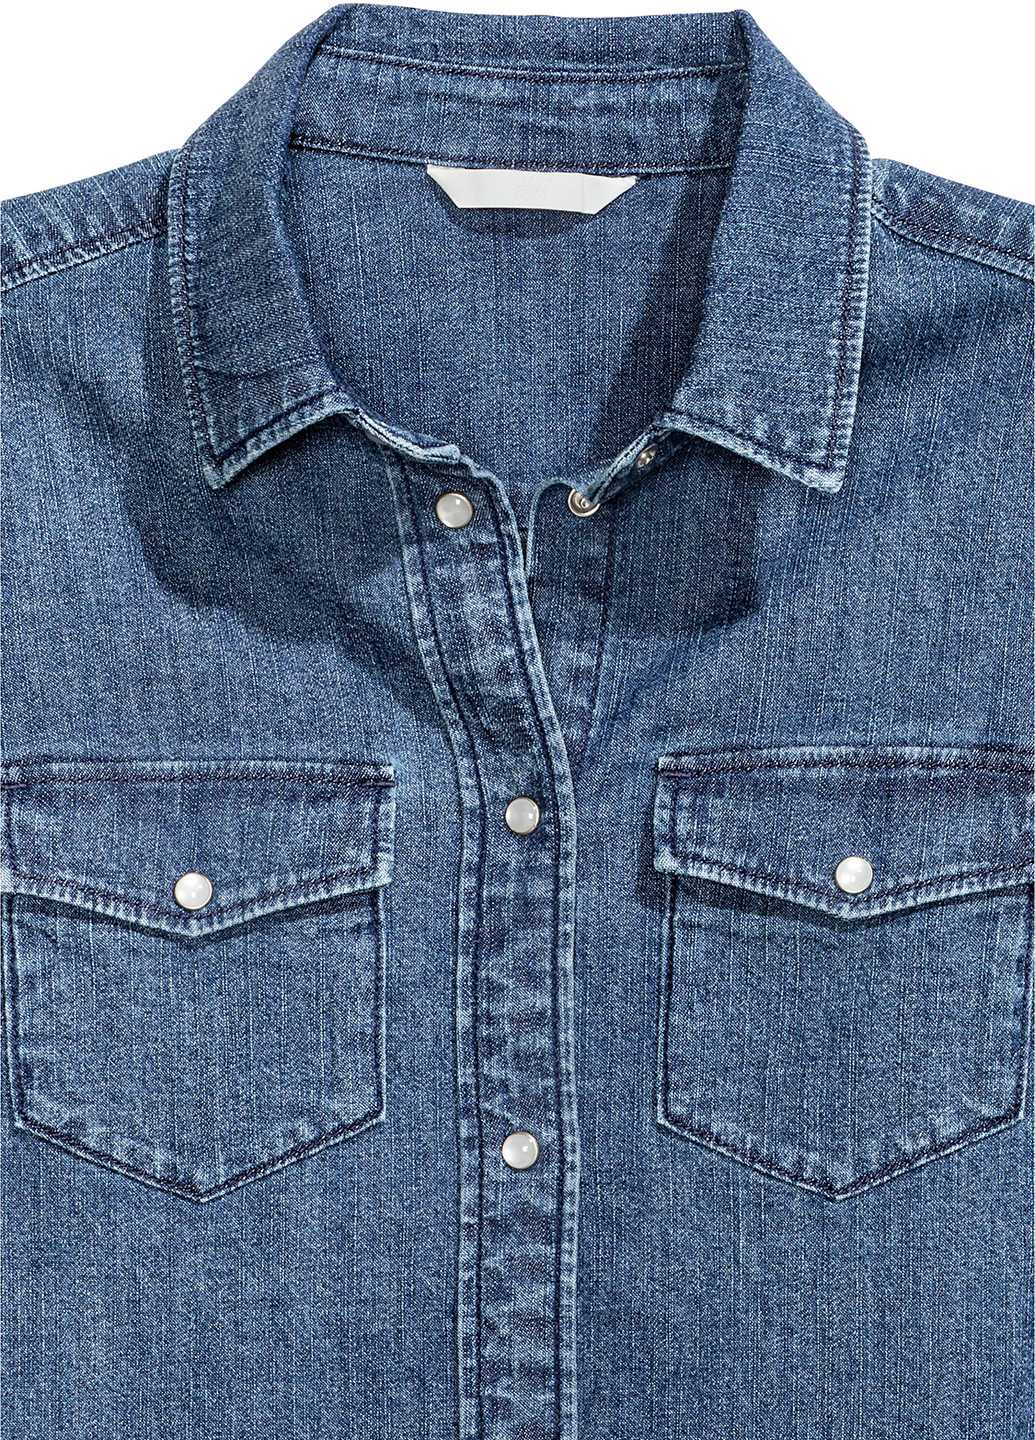 Синяя джинсовая рубашка H&M с длинным рукавом